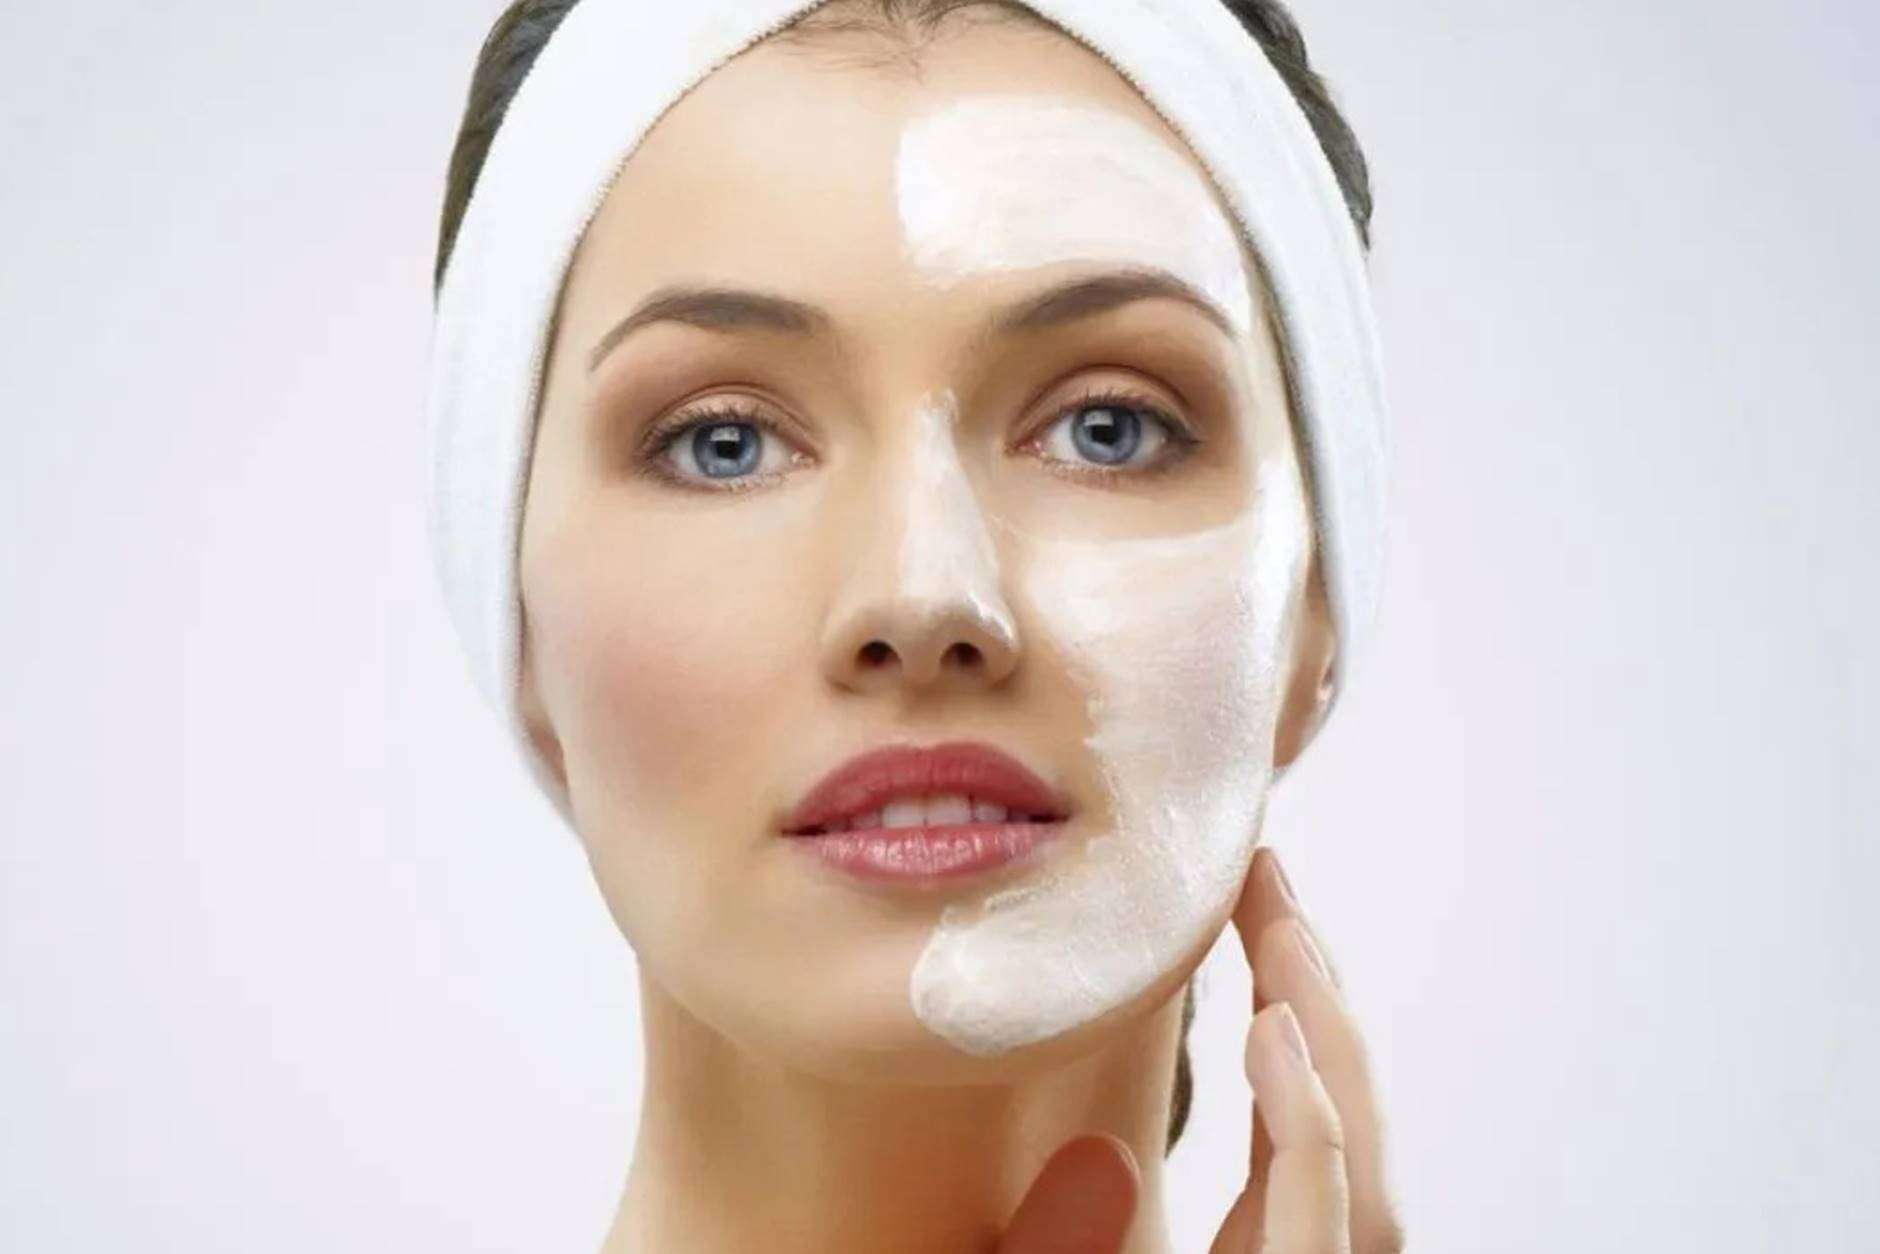 Proteja sua pele, elimine rugas e economize dinheiro fazendo seu próprio removedor natural de maquiagem